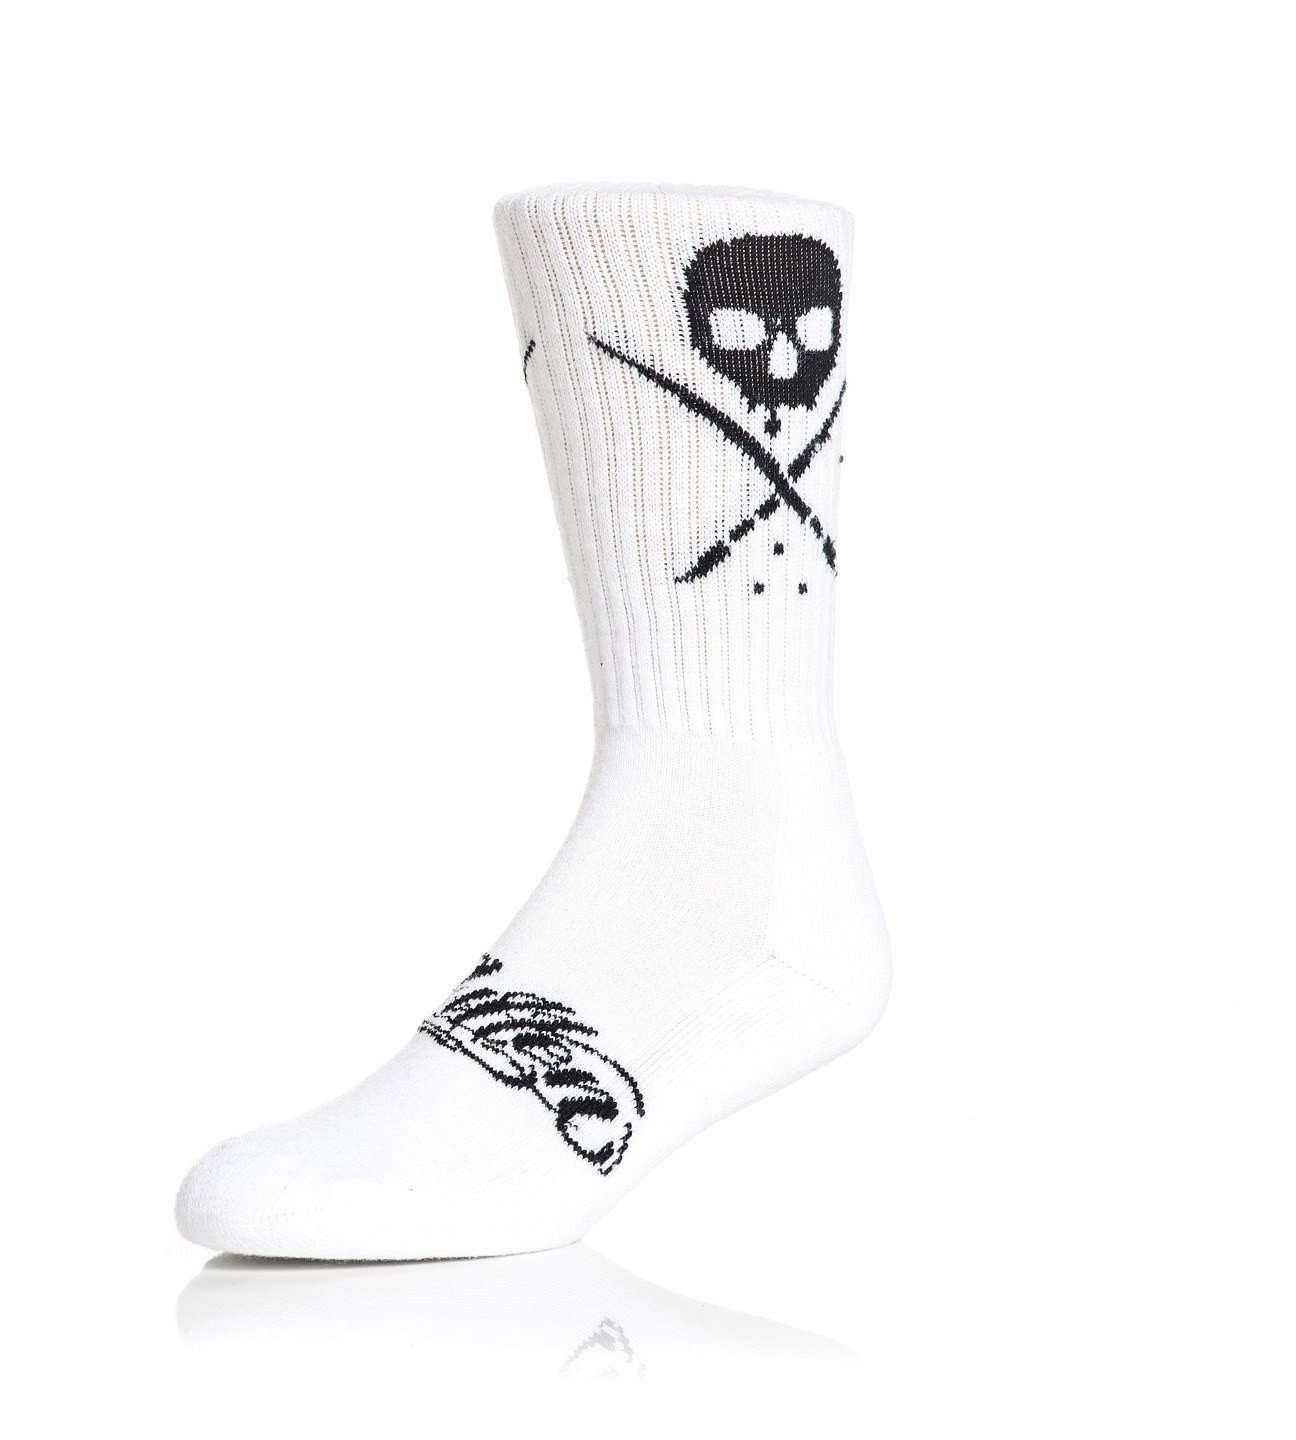 Standard Issue Socks White/Black - 